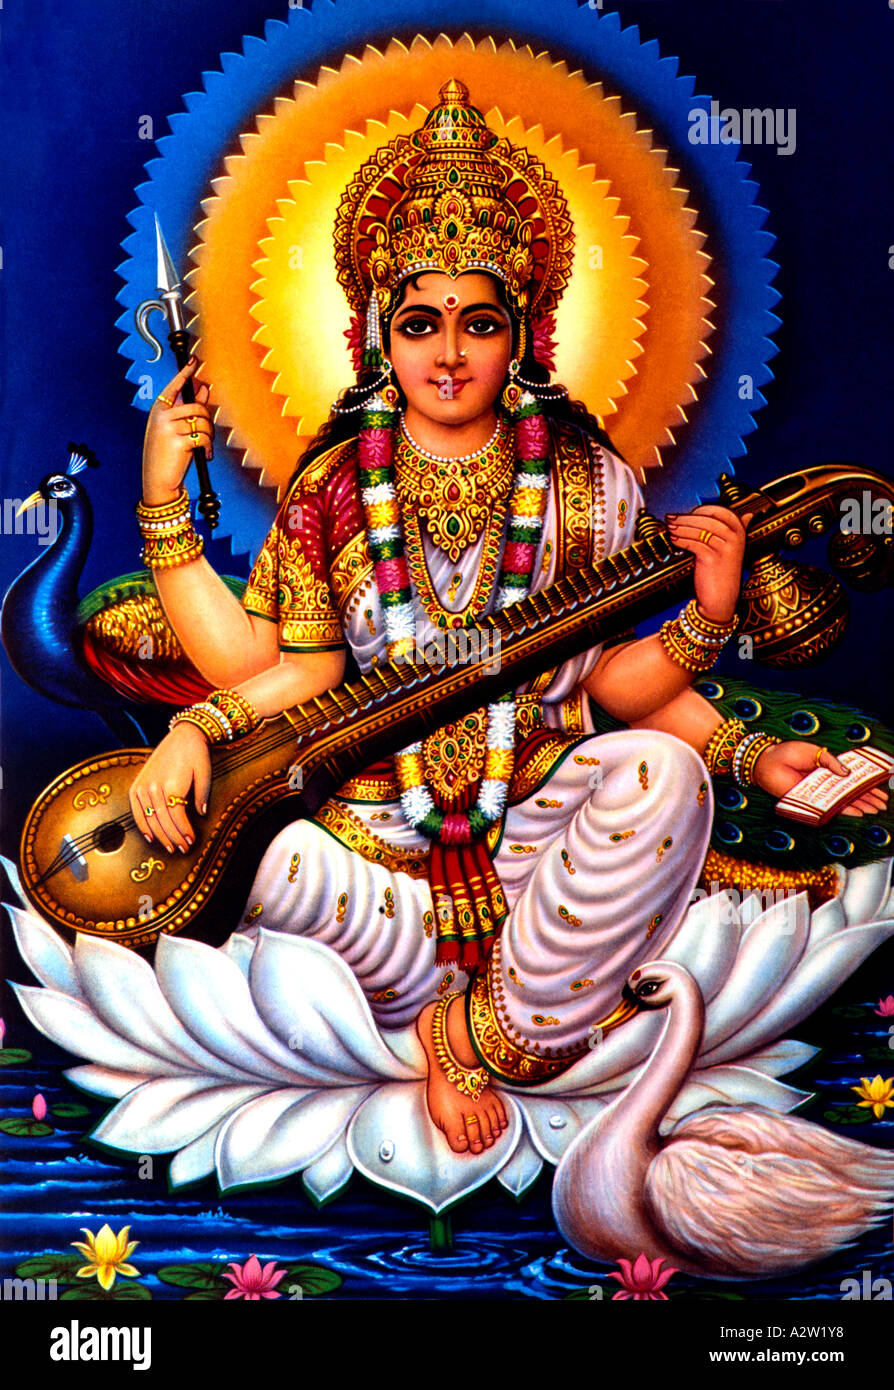 Saraswati goddess hi-res stock photography and images - Alamy